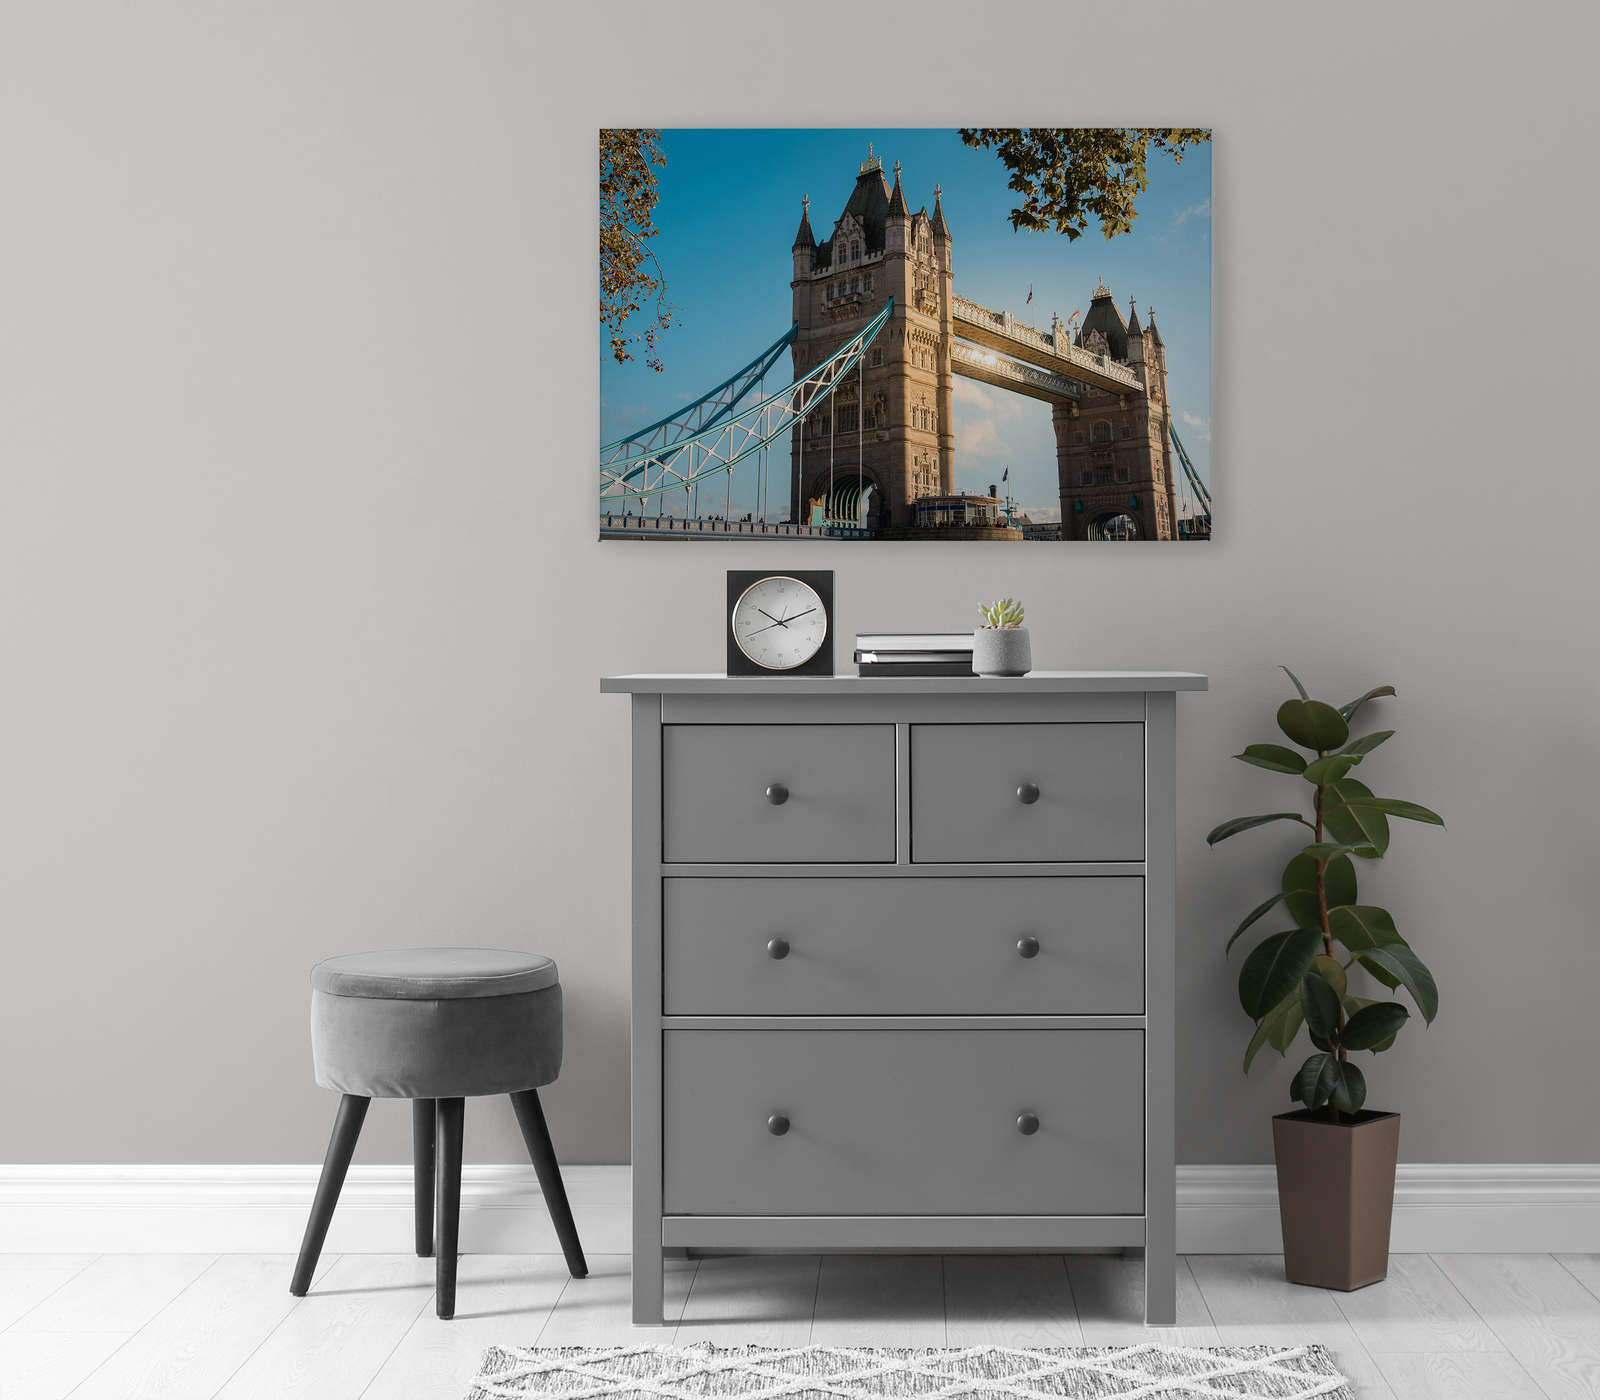             Canvas schilderij met London Bridge in zonnig weer - 0.90 m x 0.60 m
        